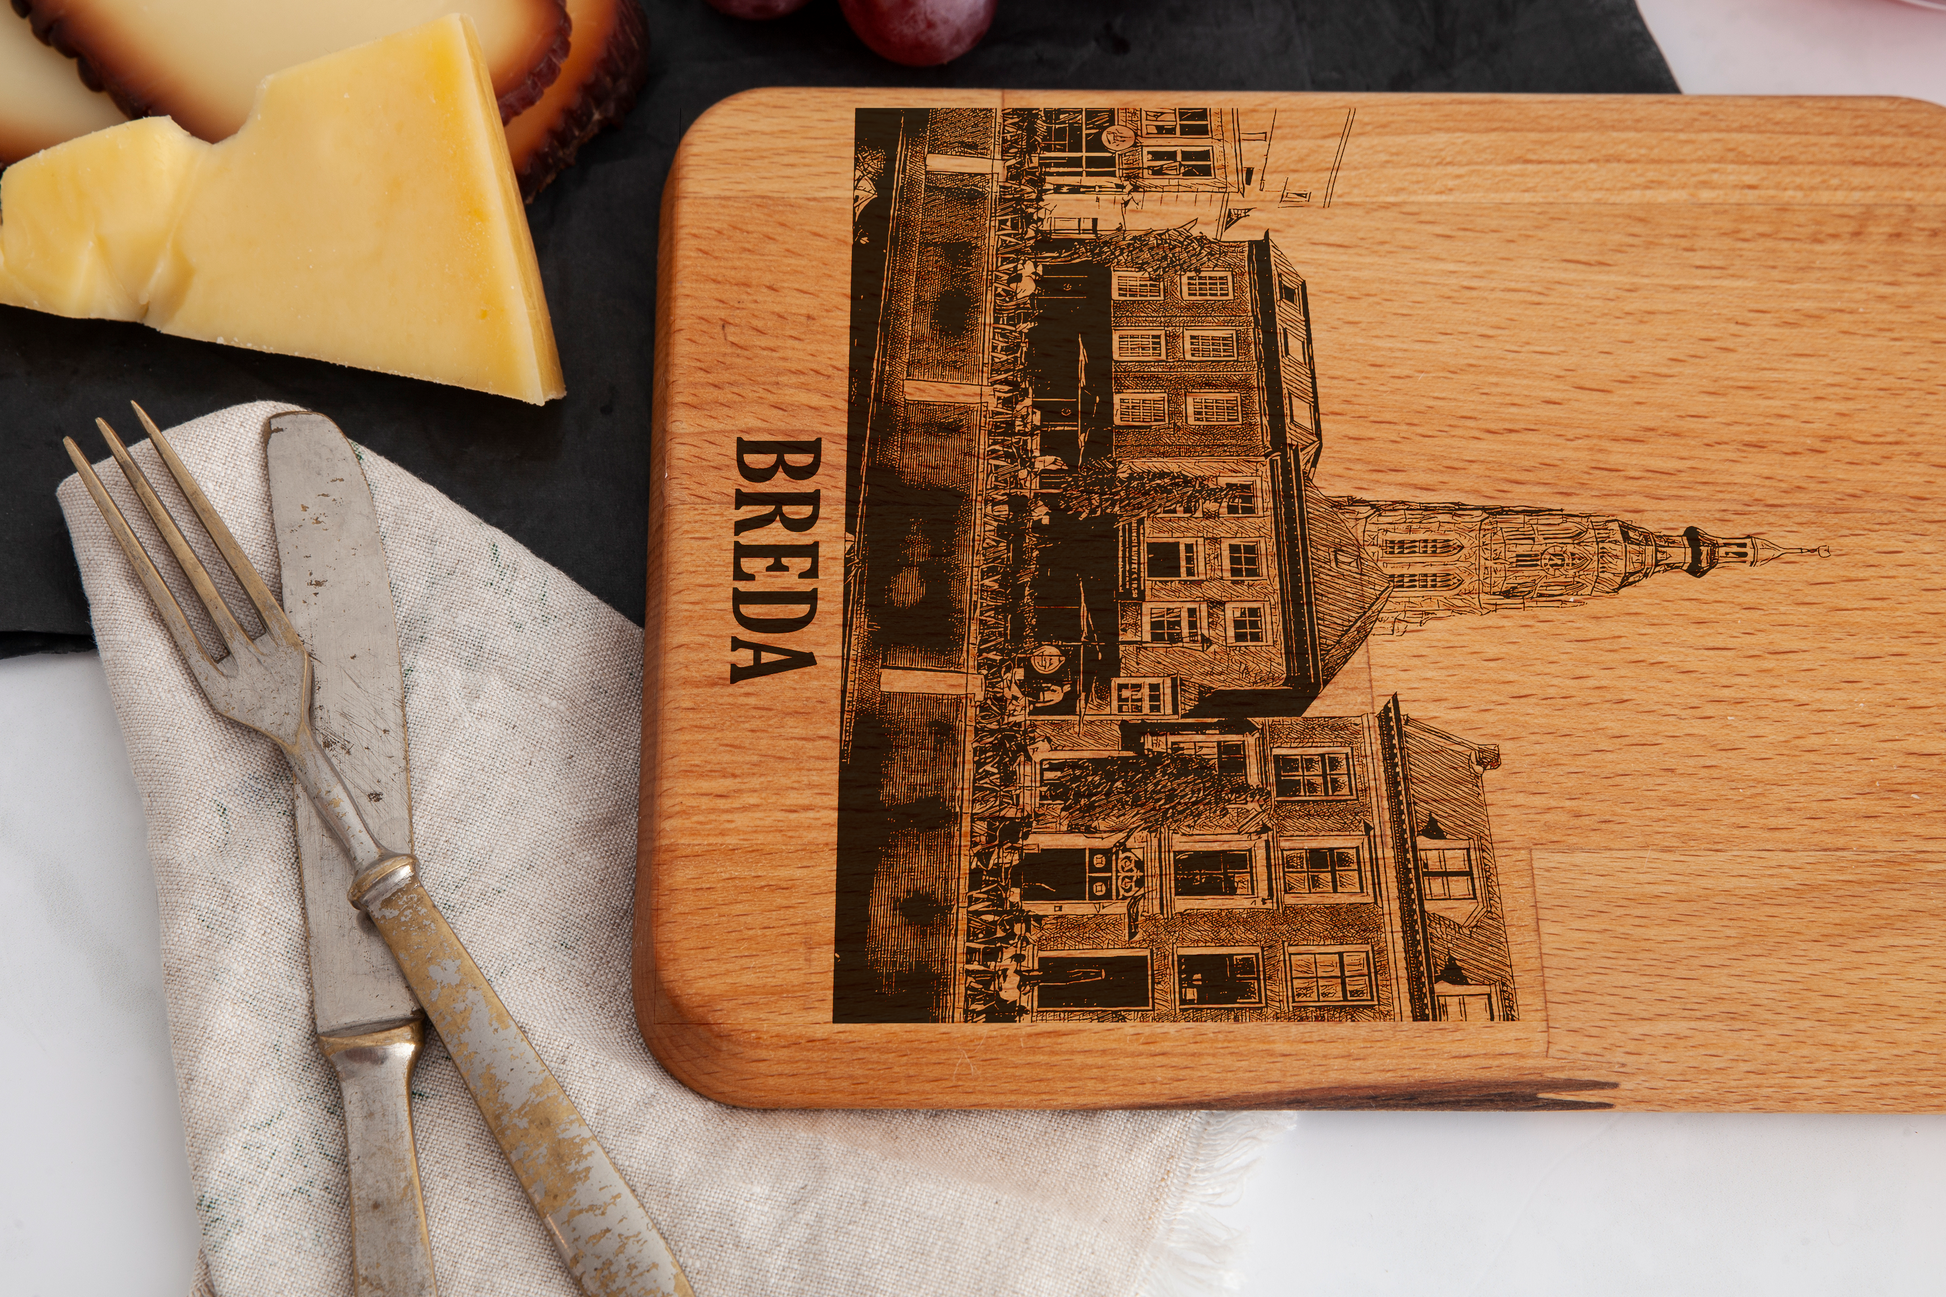 Breda, Grote Kerk, cheese board, wood grain